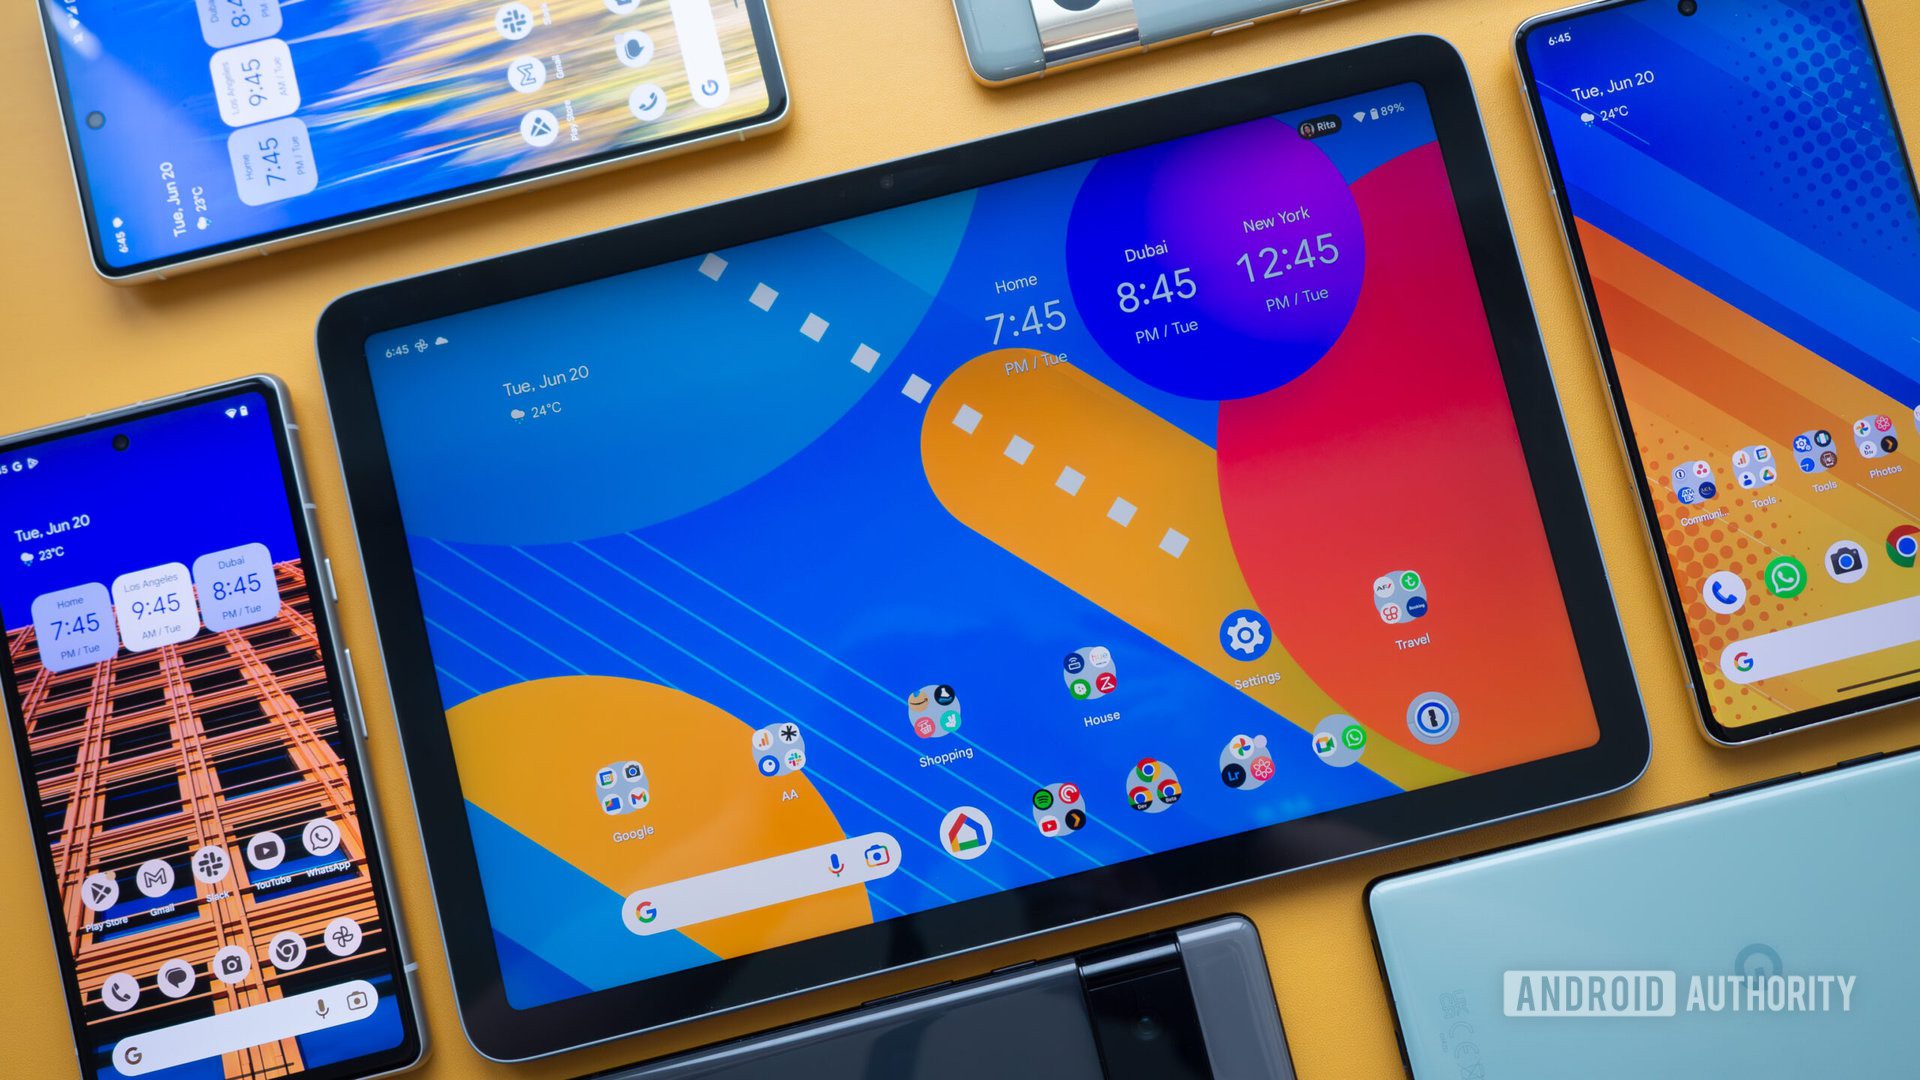 Google Pixel tablet ilk fiyat düşüşünü yaşıyor